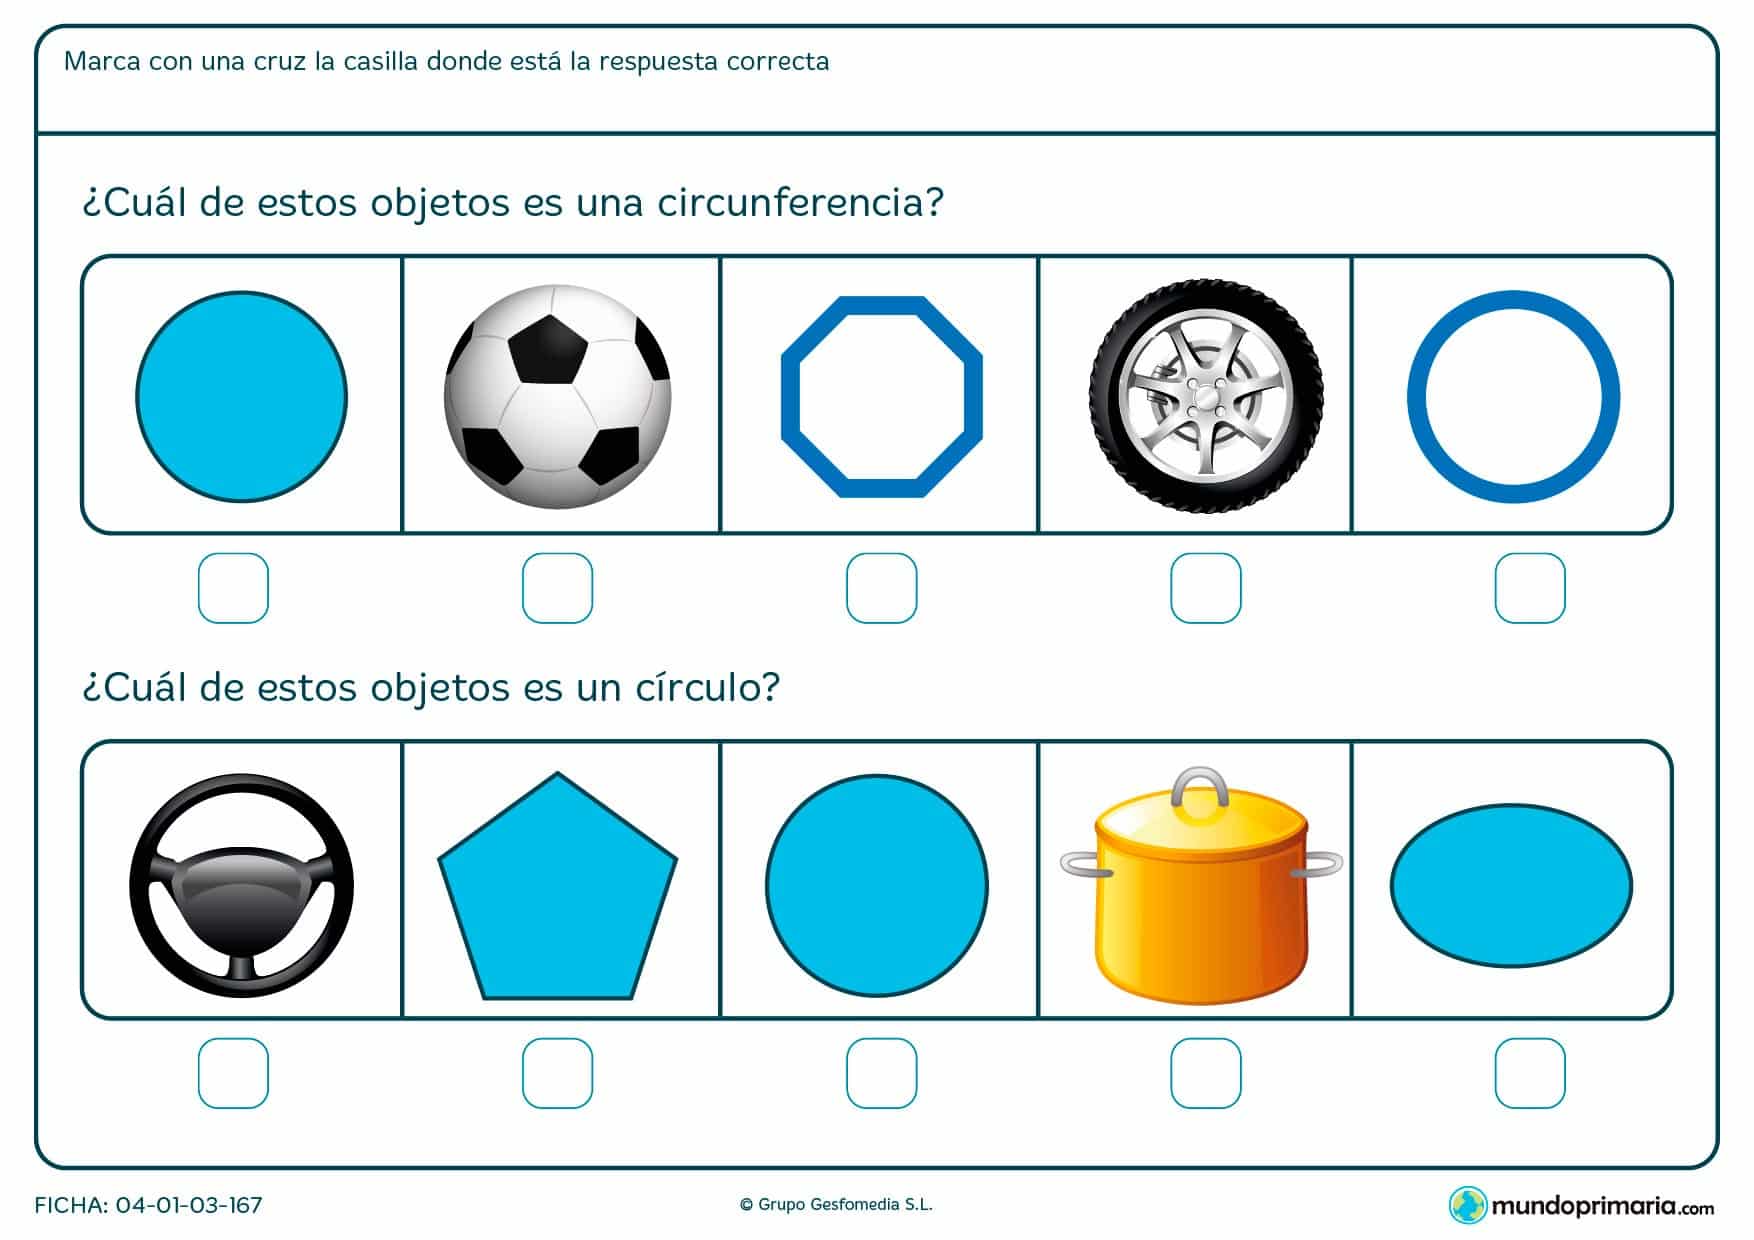 Ficha de círculos en la que debes marcar que objetos son circunferencias y cuáles círculos.